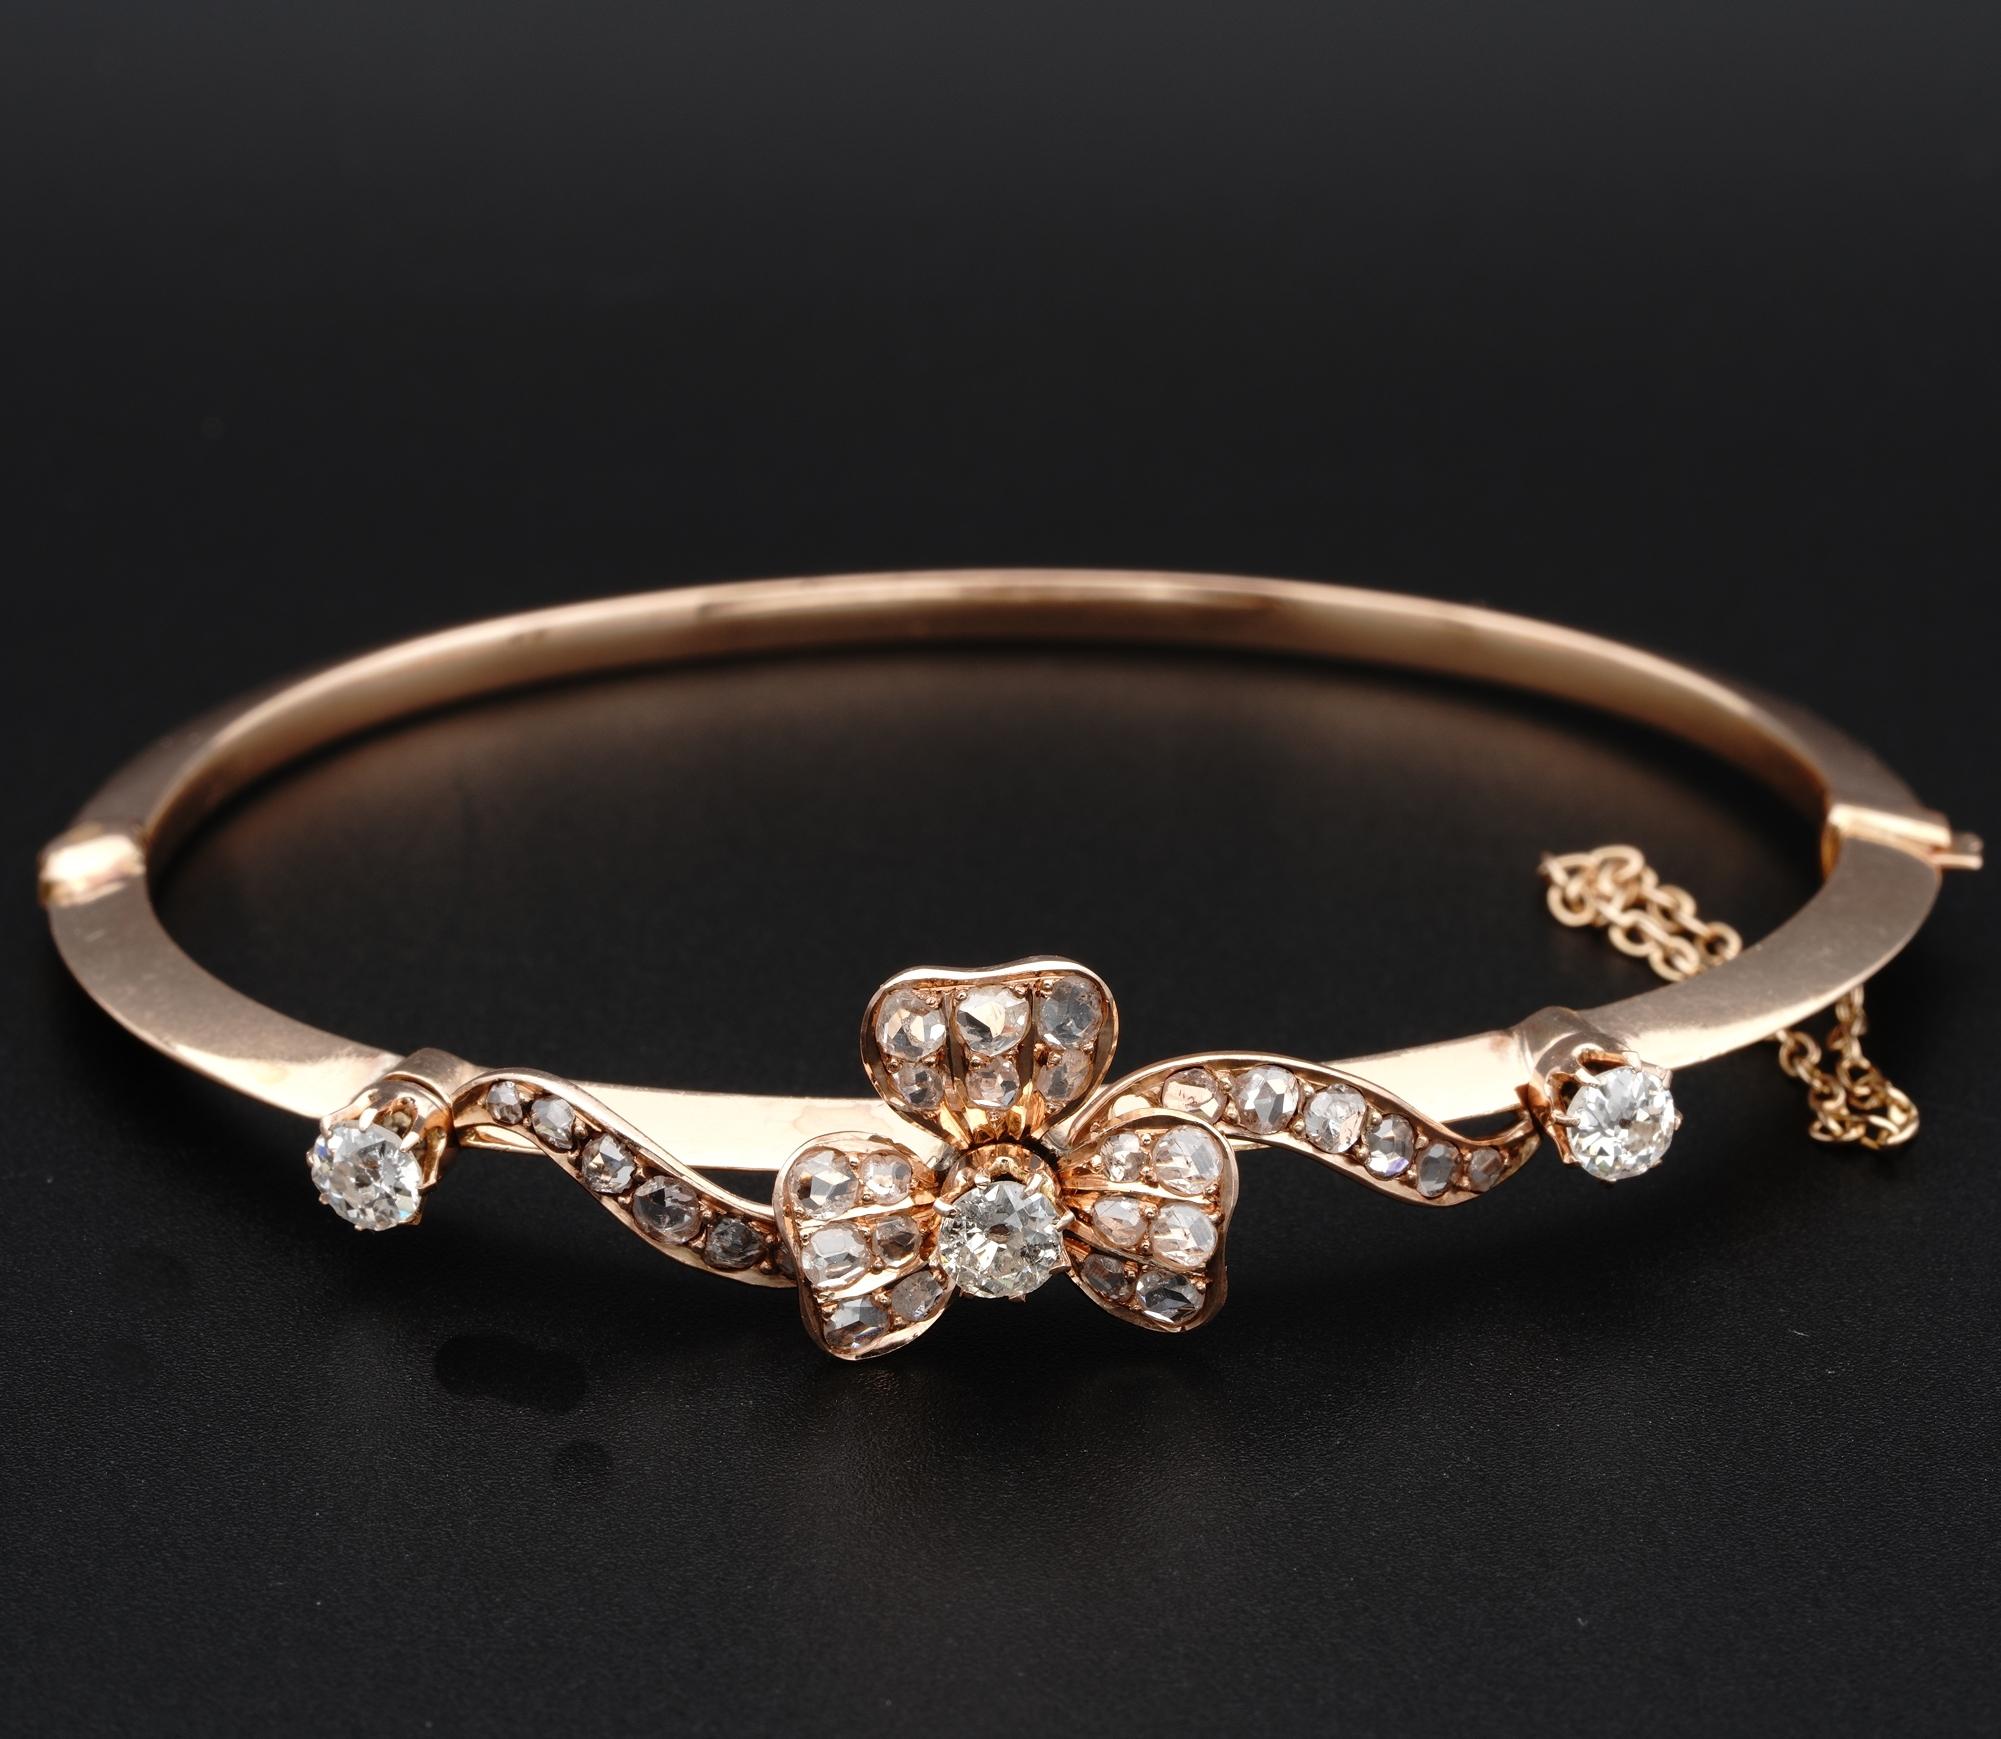 Magnifique bracelet victorien en diamant, or massif 18 KT, 1880 env.
Magnifiquement réalisé à la main en forme de trèfle, symbole de chance, entouré d'un motif torsadé.
Serti de 2.40 Ct TCW de diamants entre des diamants taillés en rose et des